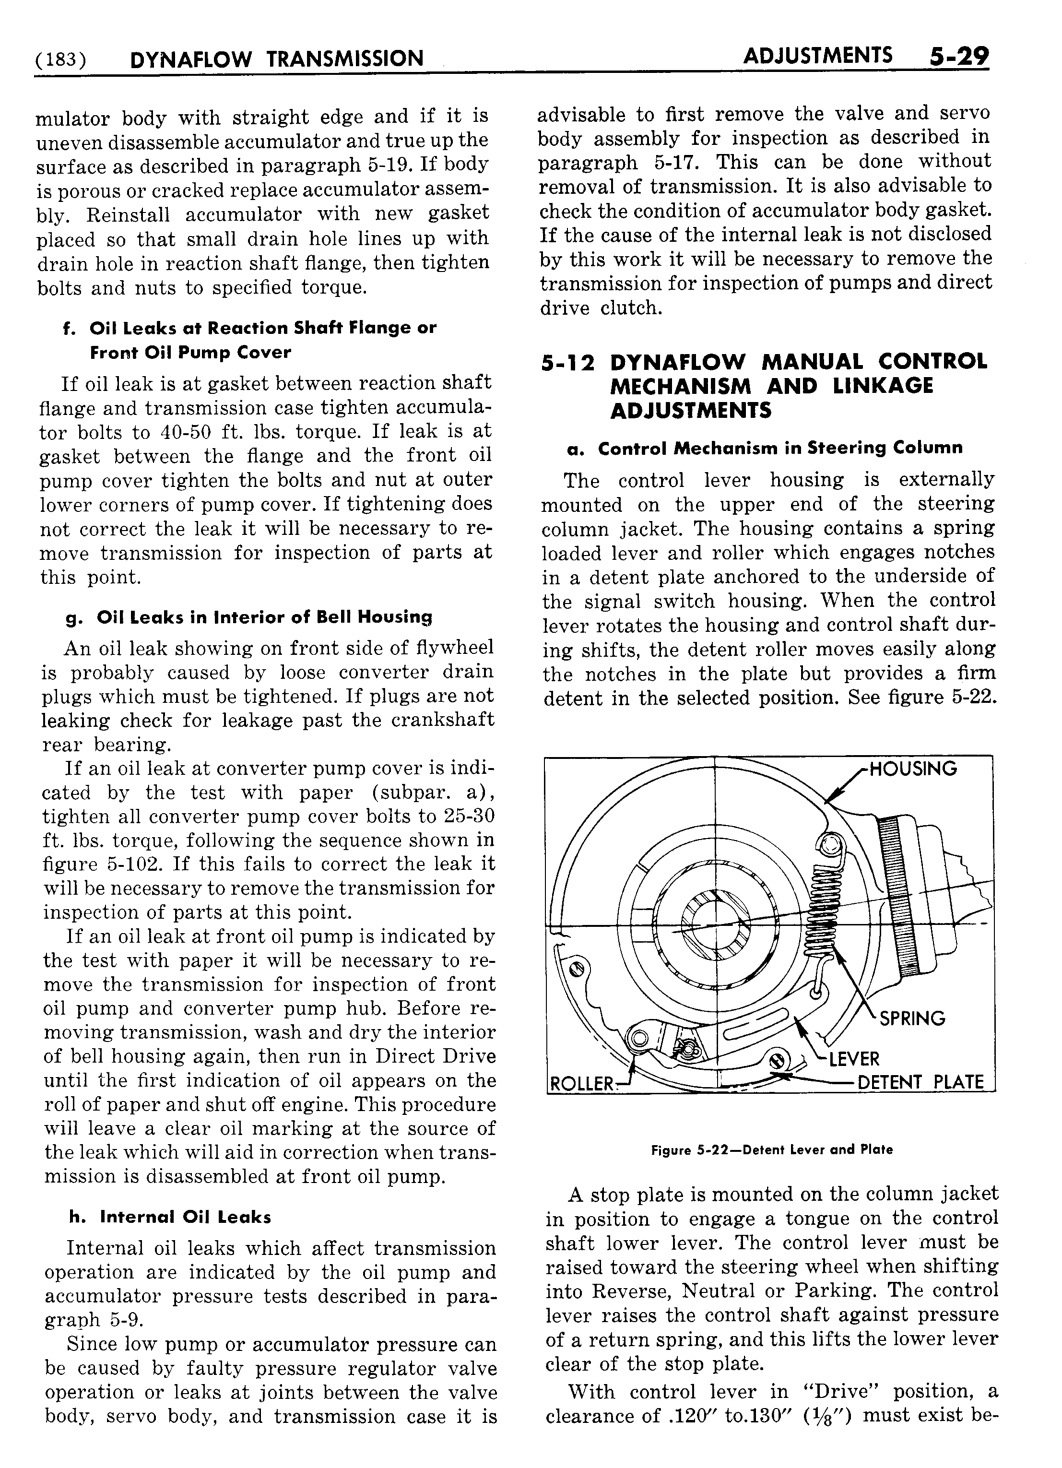 n_06 1954 Buick Shop Manual - Dynaflow-029-029.jpg